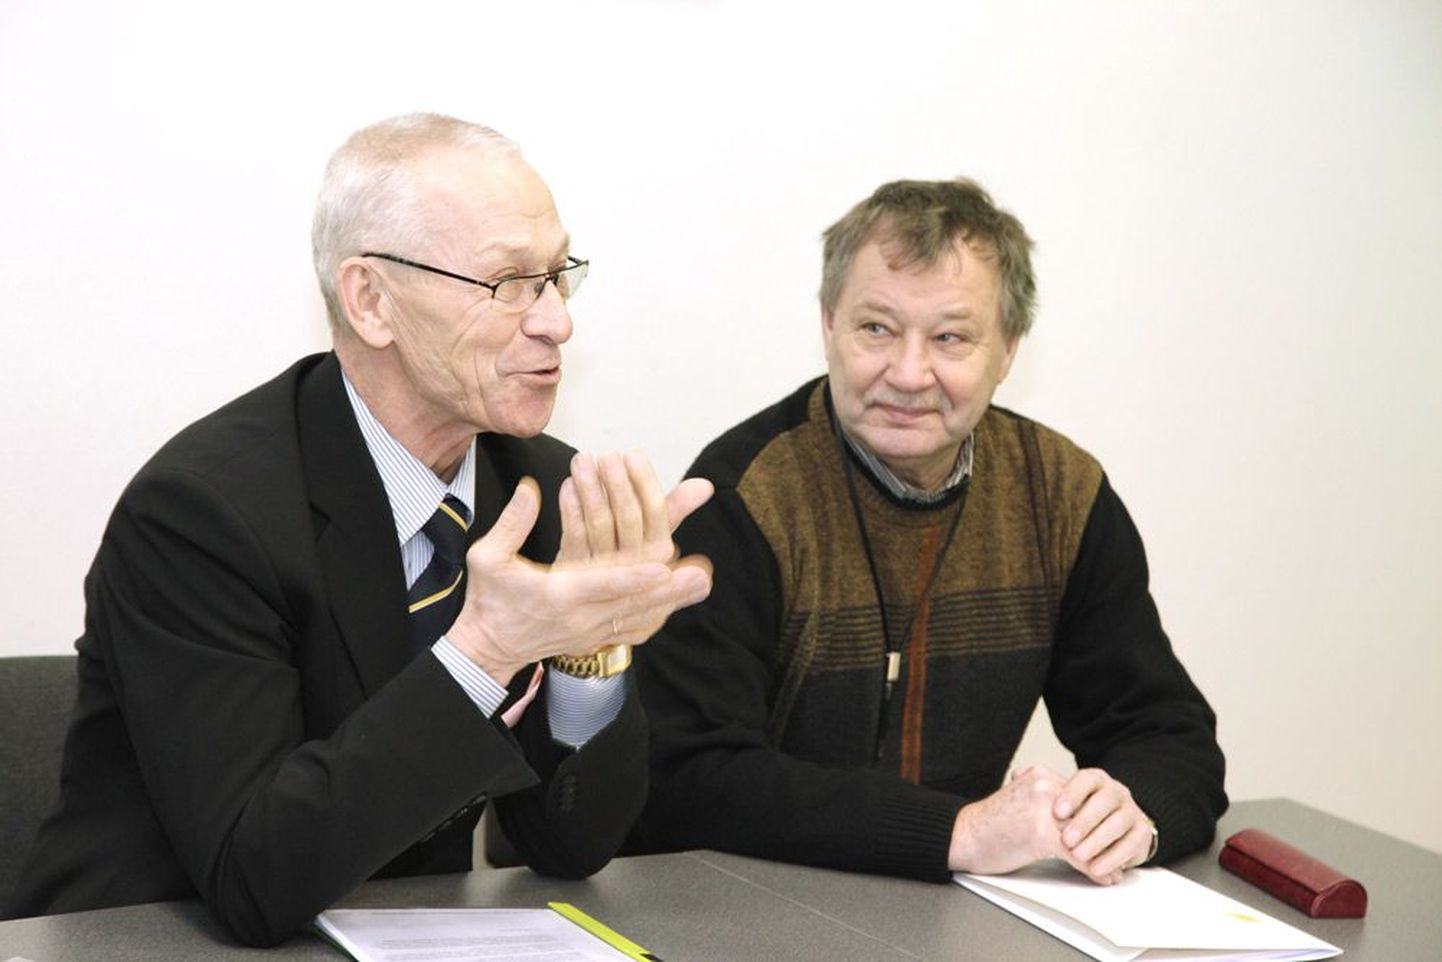 Riiklik lepitaja Henn Pärn (vasakul) ja tema nõunik Raivo Paavo hetk enne õpetajate palgatõusu arutelu algust.